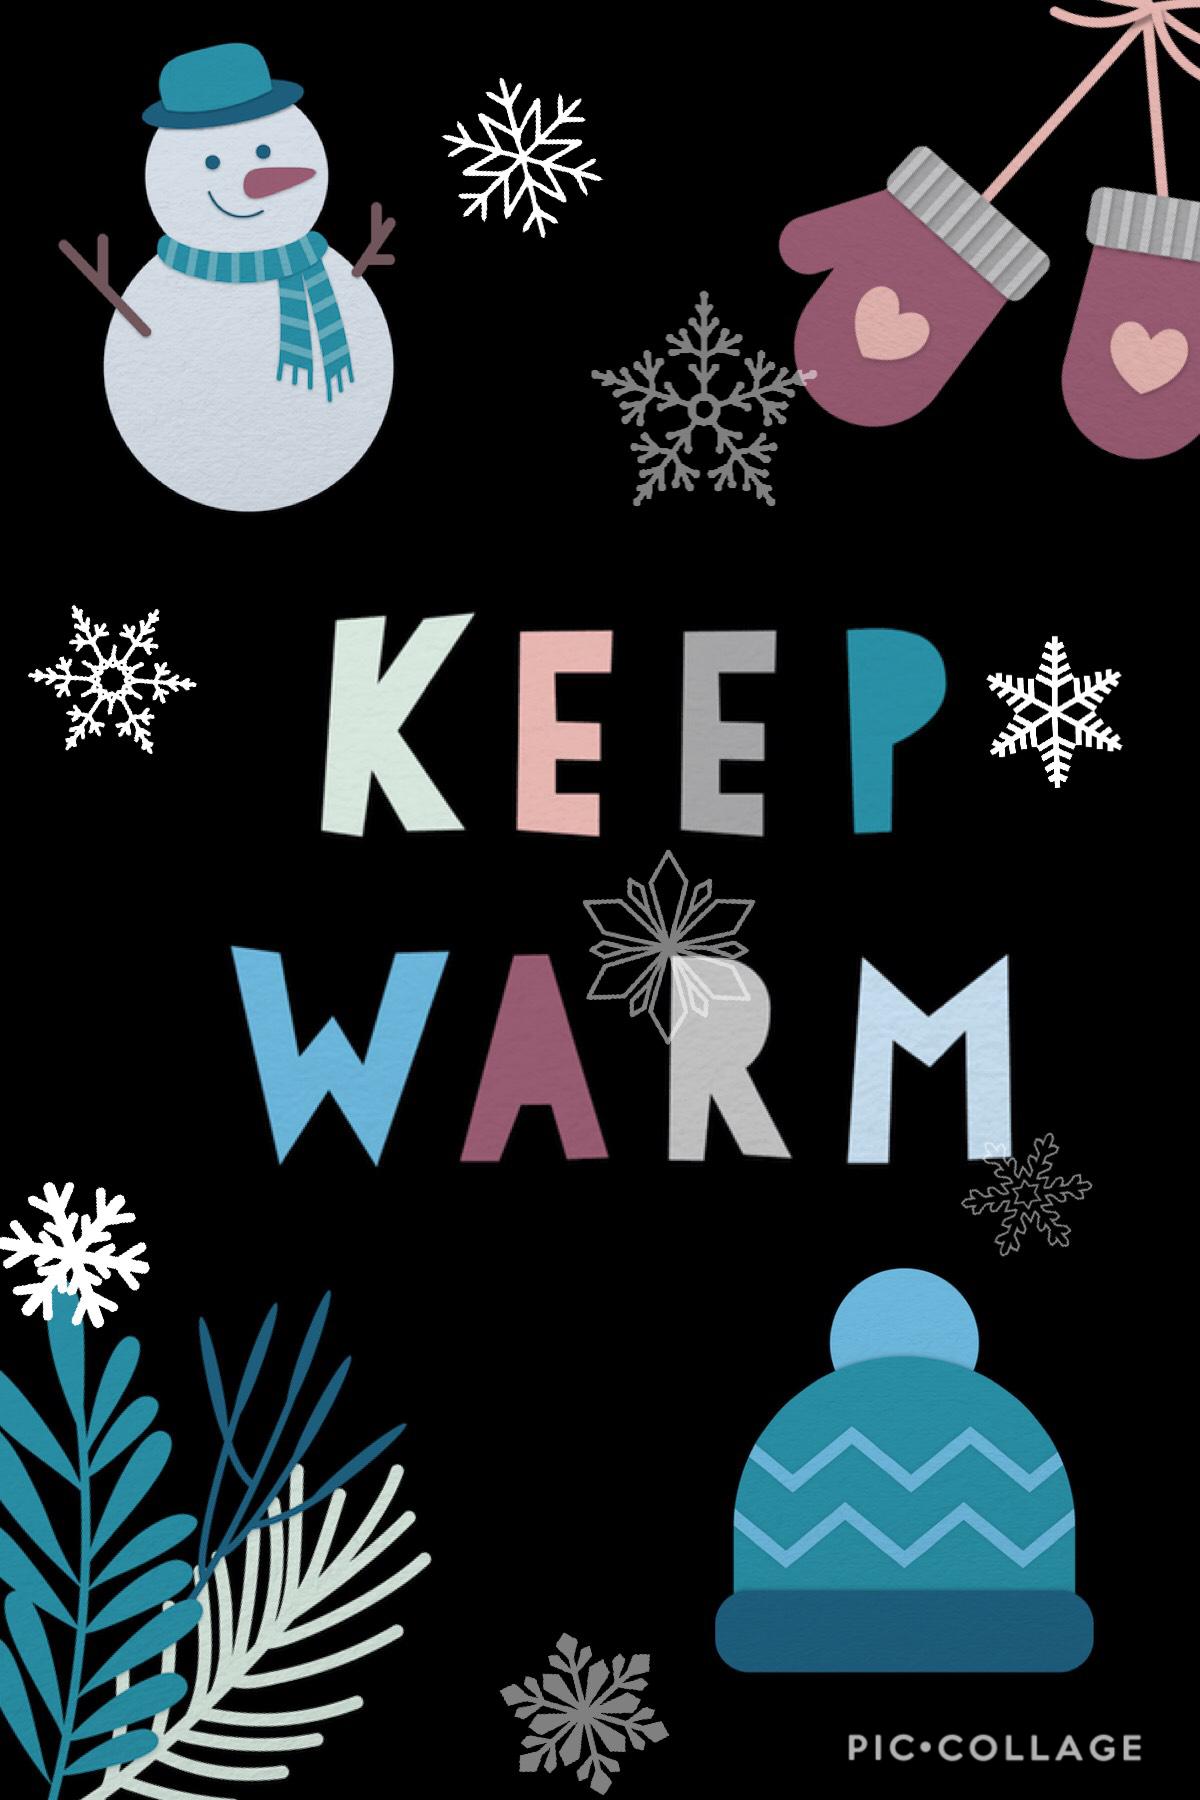 Keep warm!